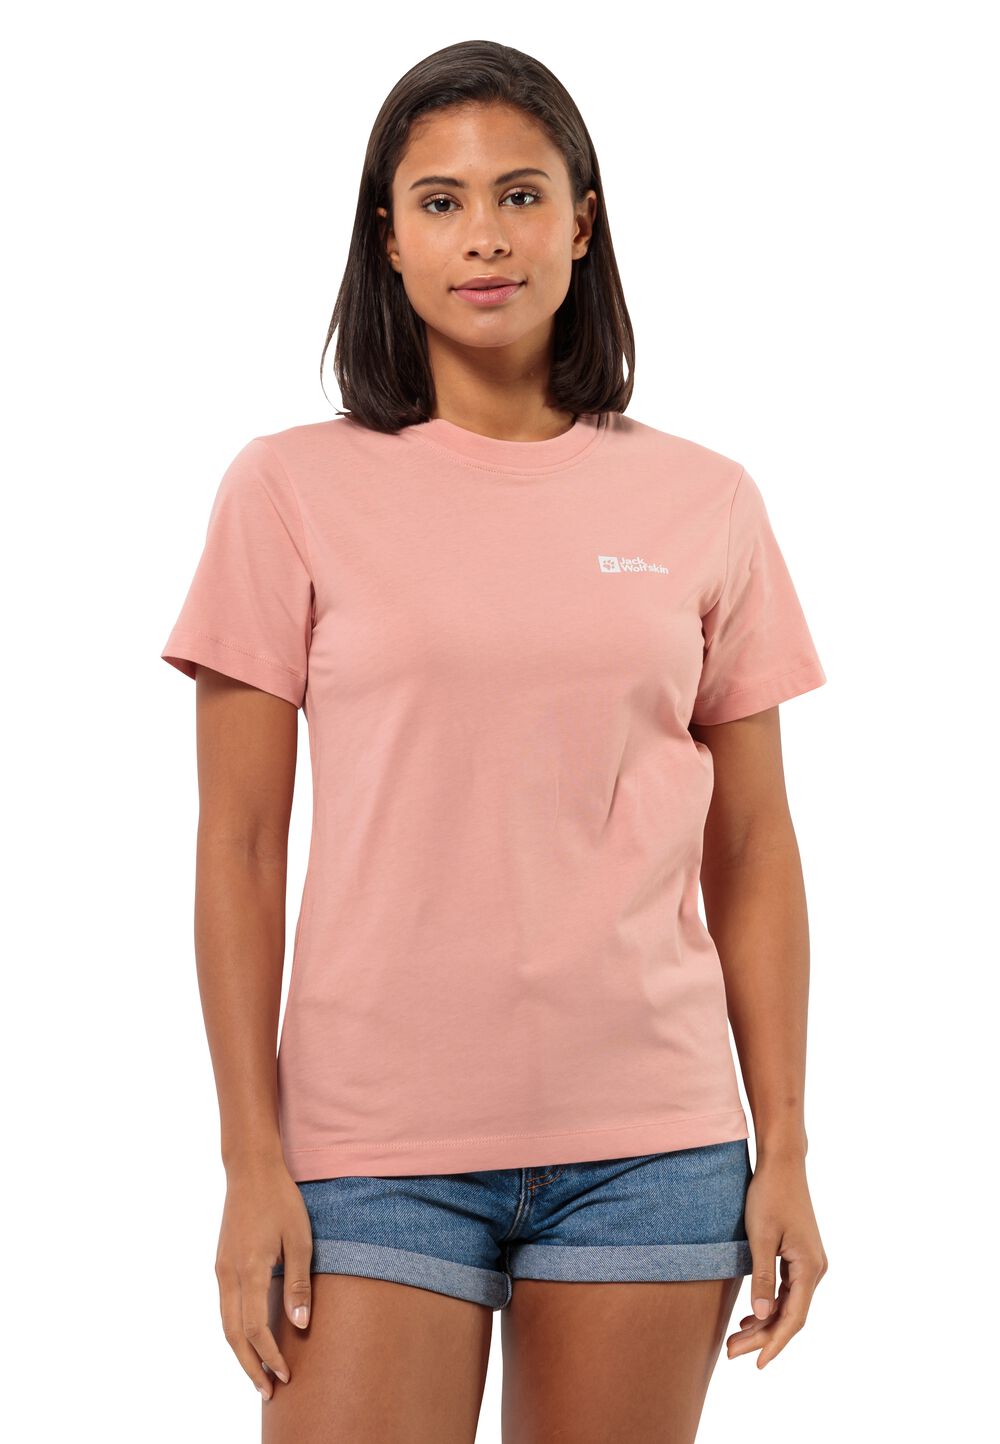 Jack Wolfskin Essential T-Shirt Women T-shirt van biologisch katoen Dames XXL bruin rose dawn